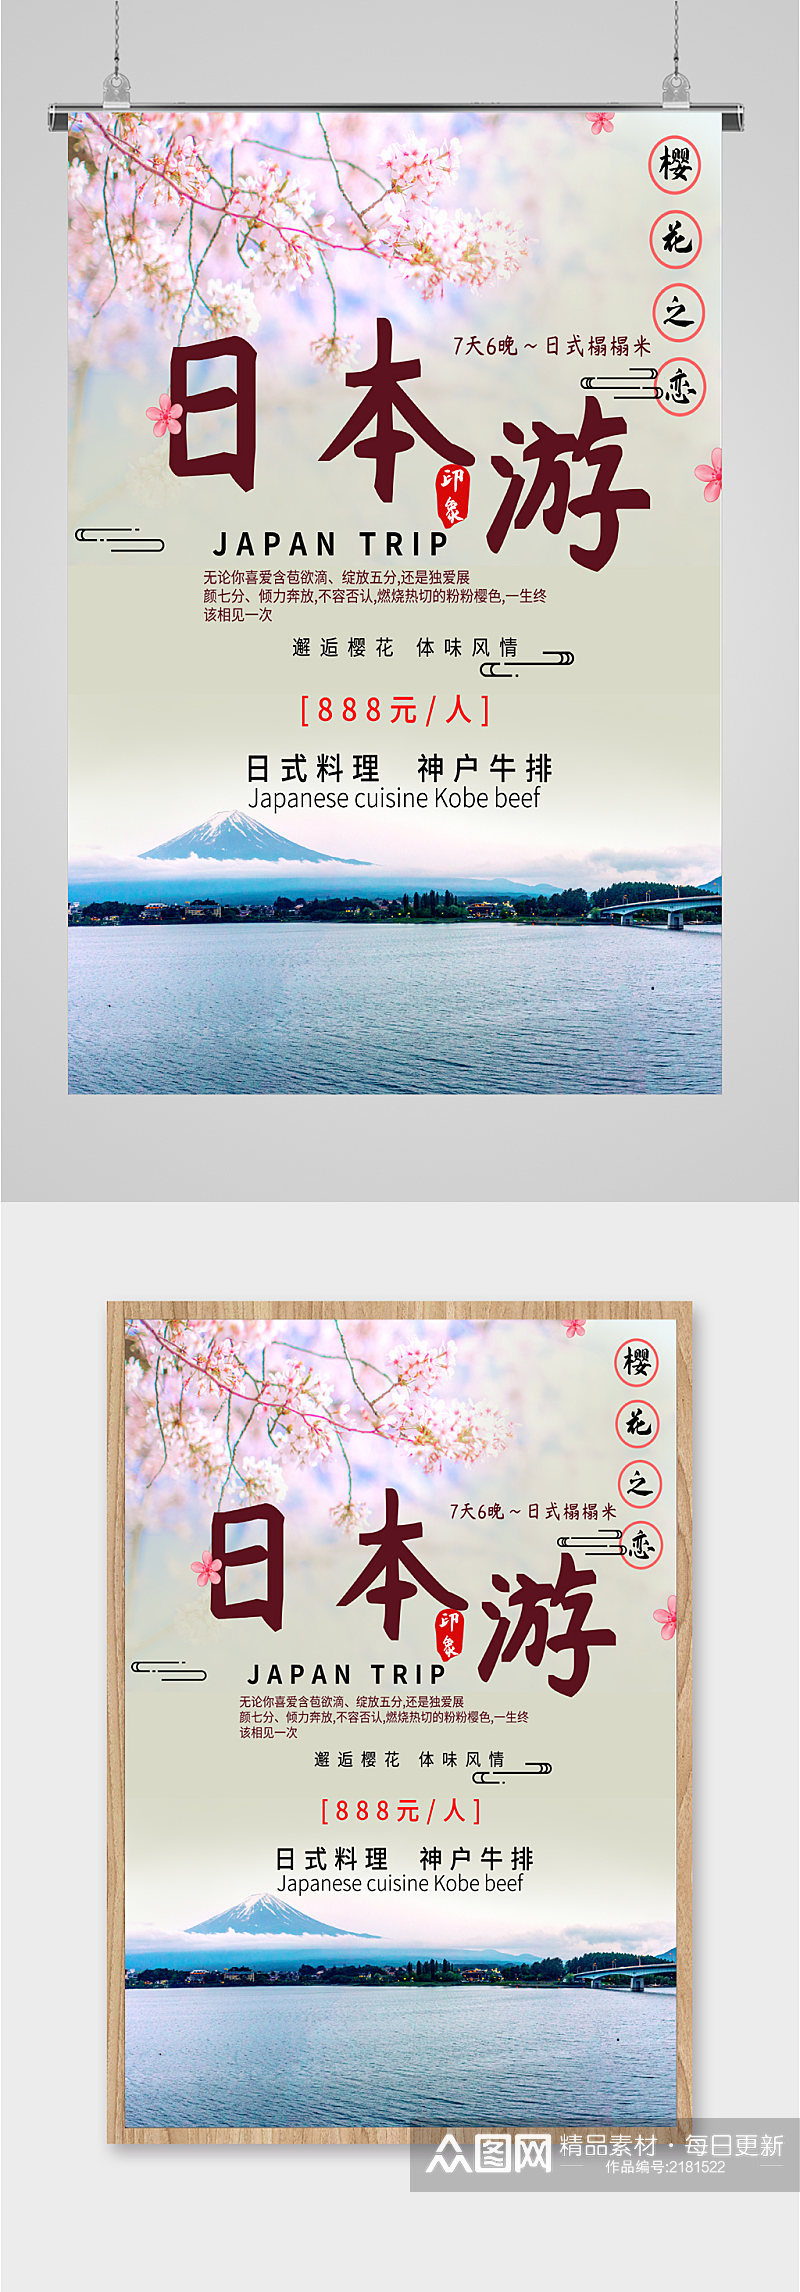 日本旅游樱花之恋海报素材